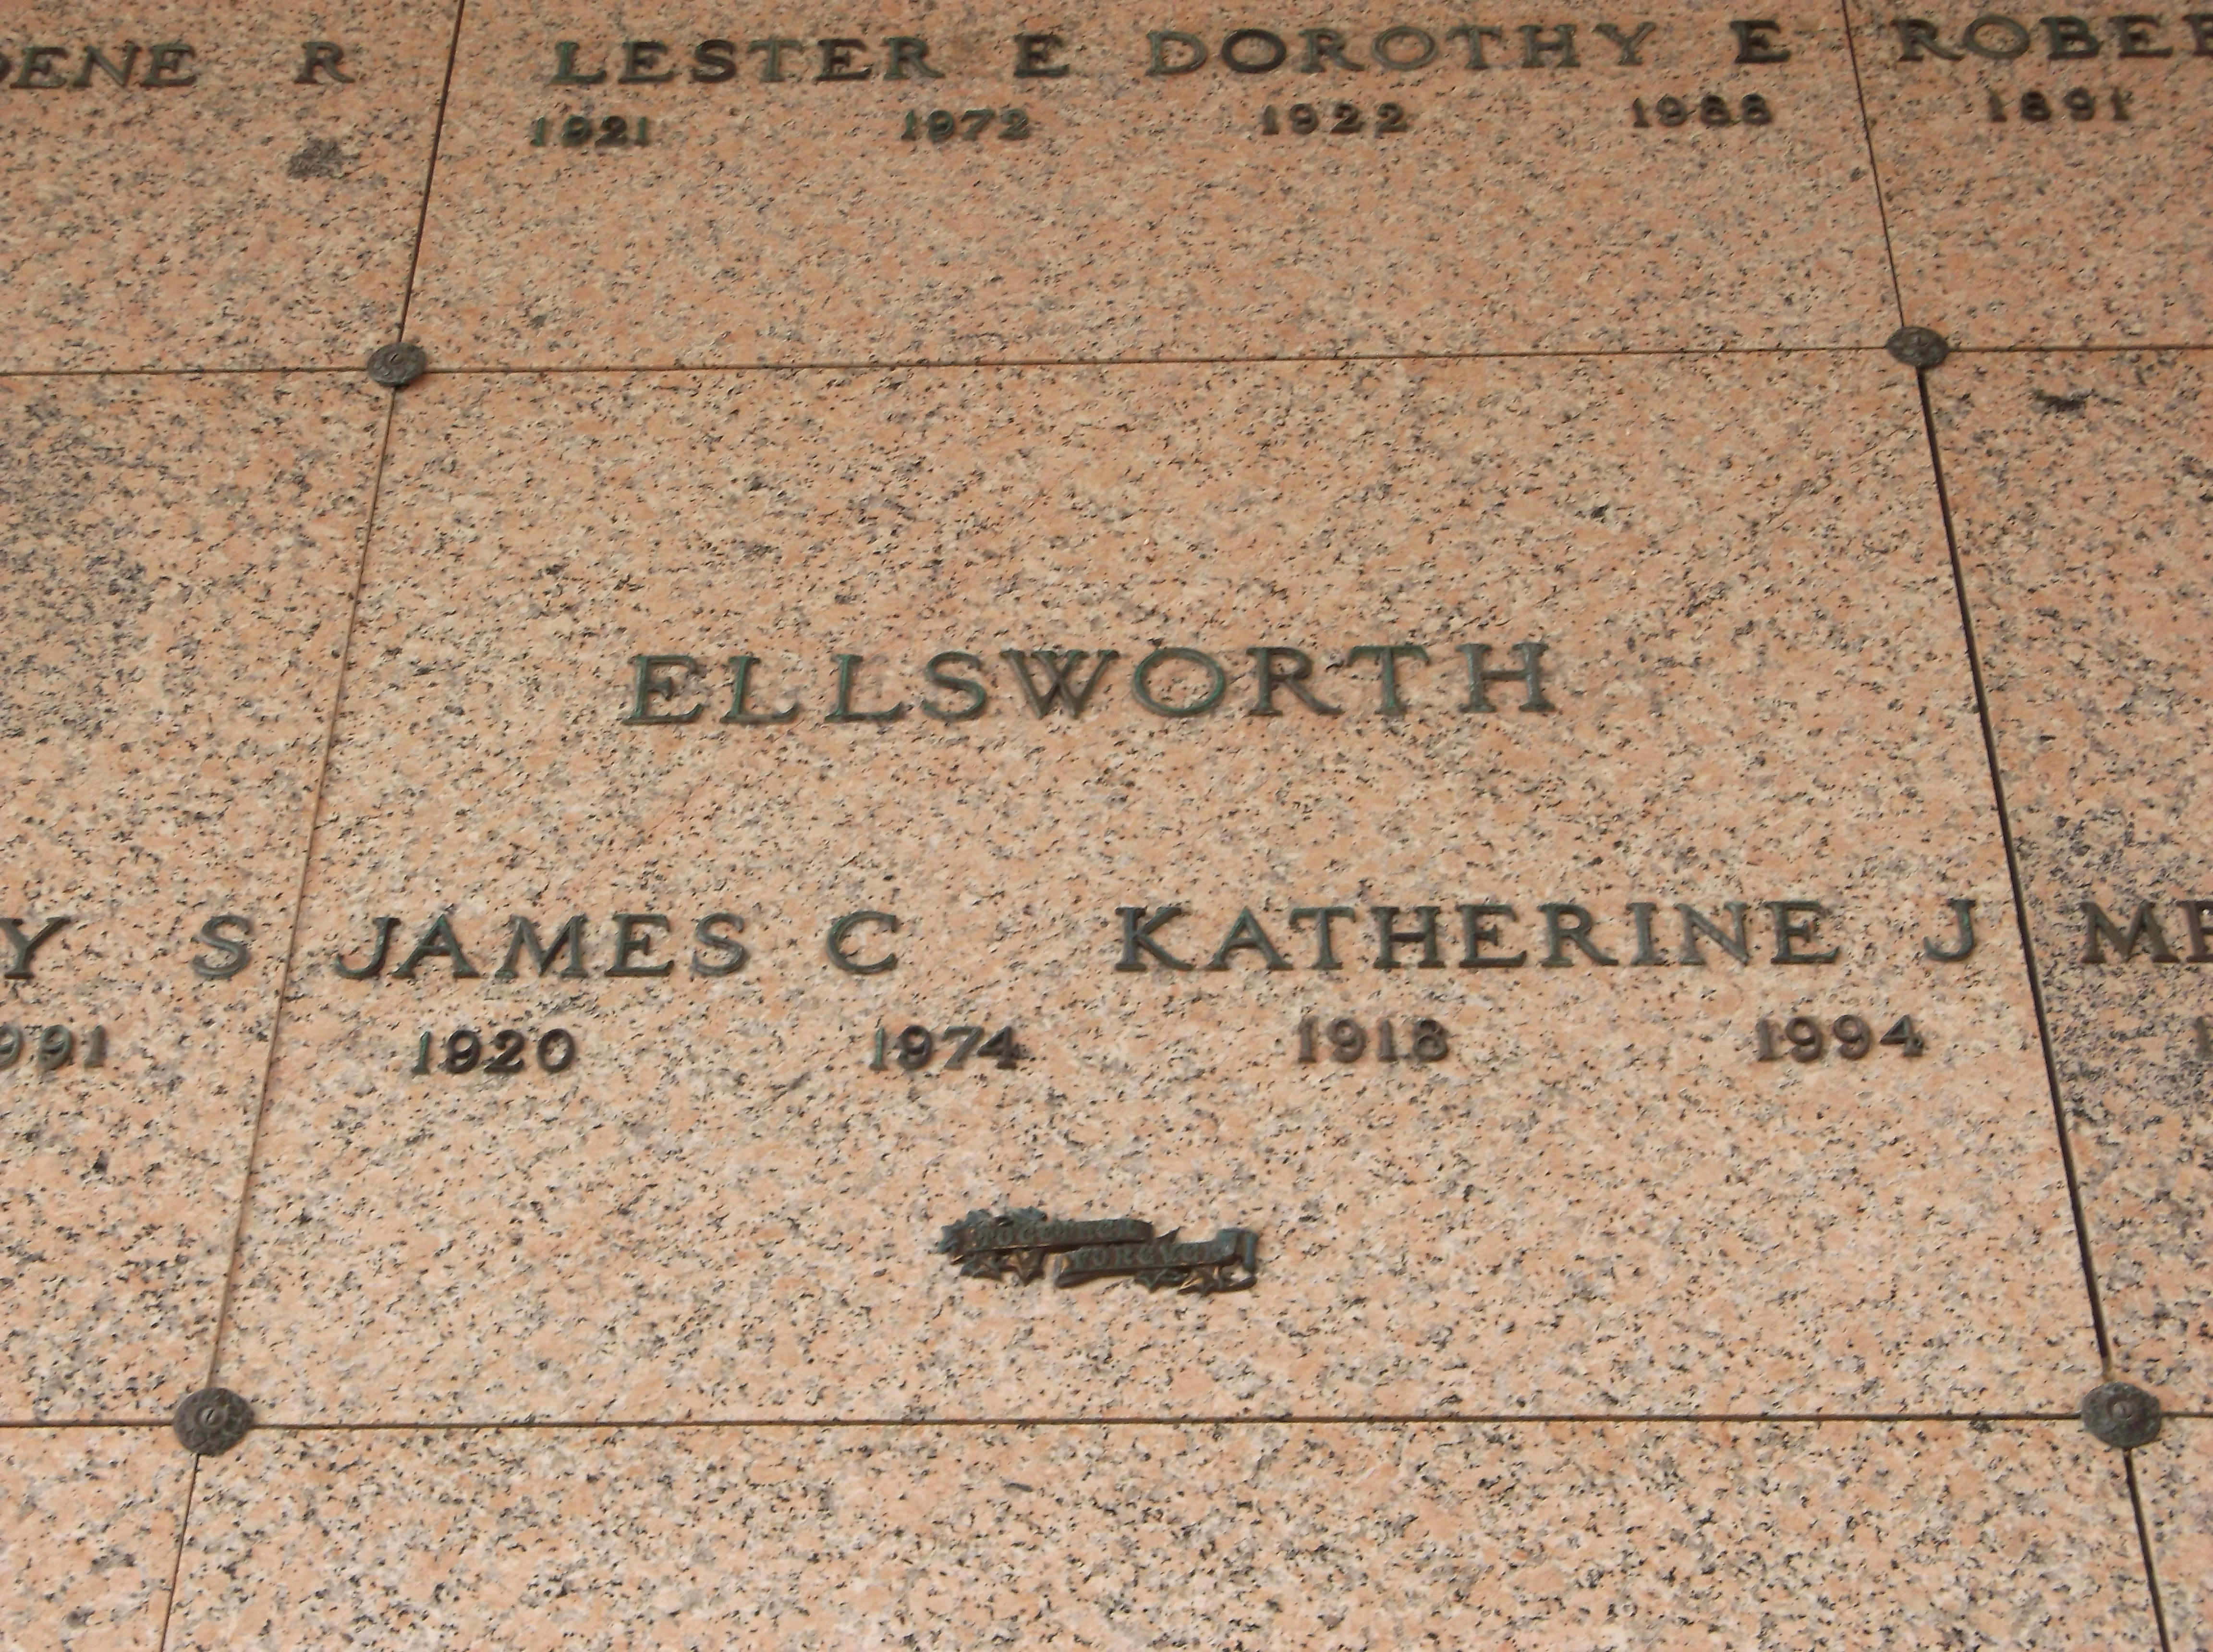 Katherine J Ellsworth